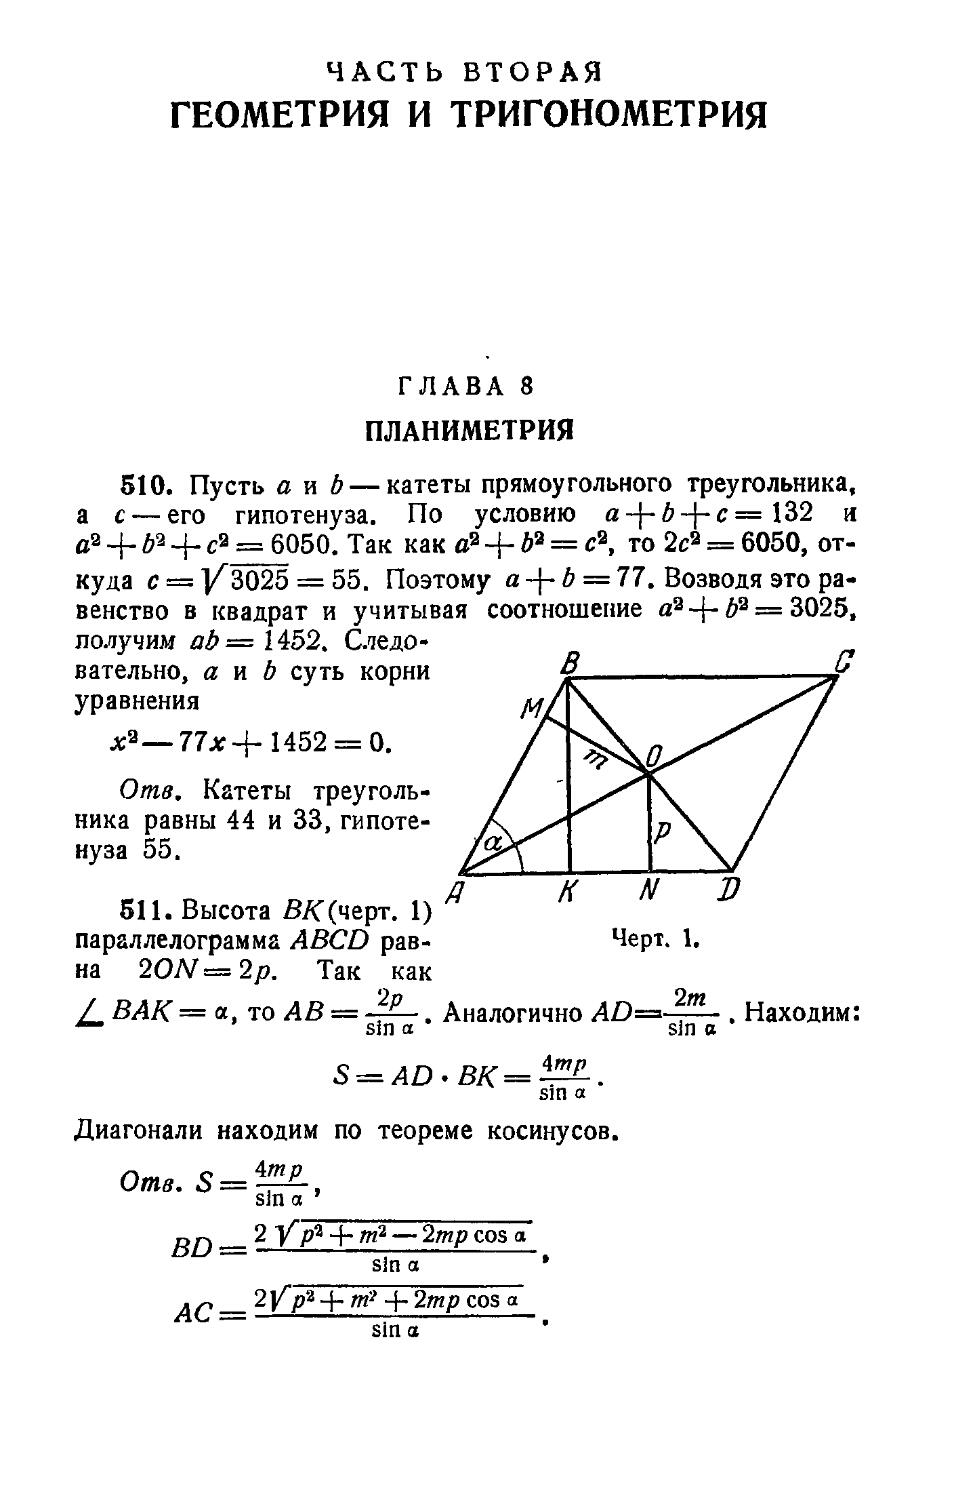 II. Геометрия и тригонометрия